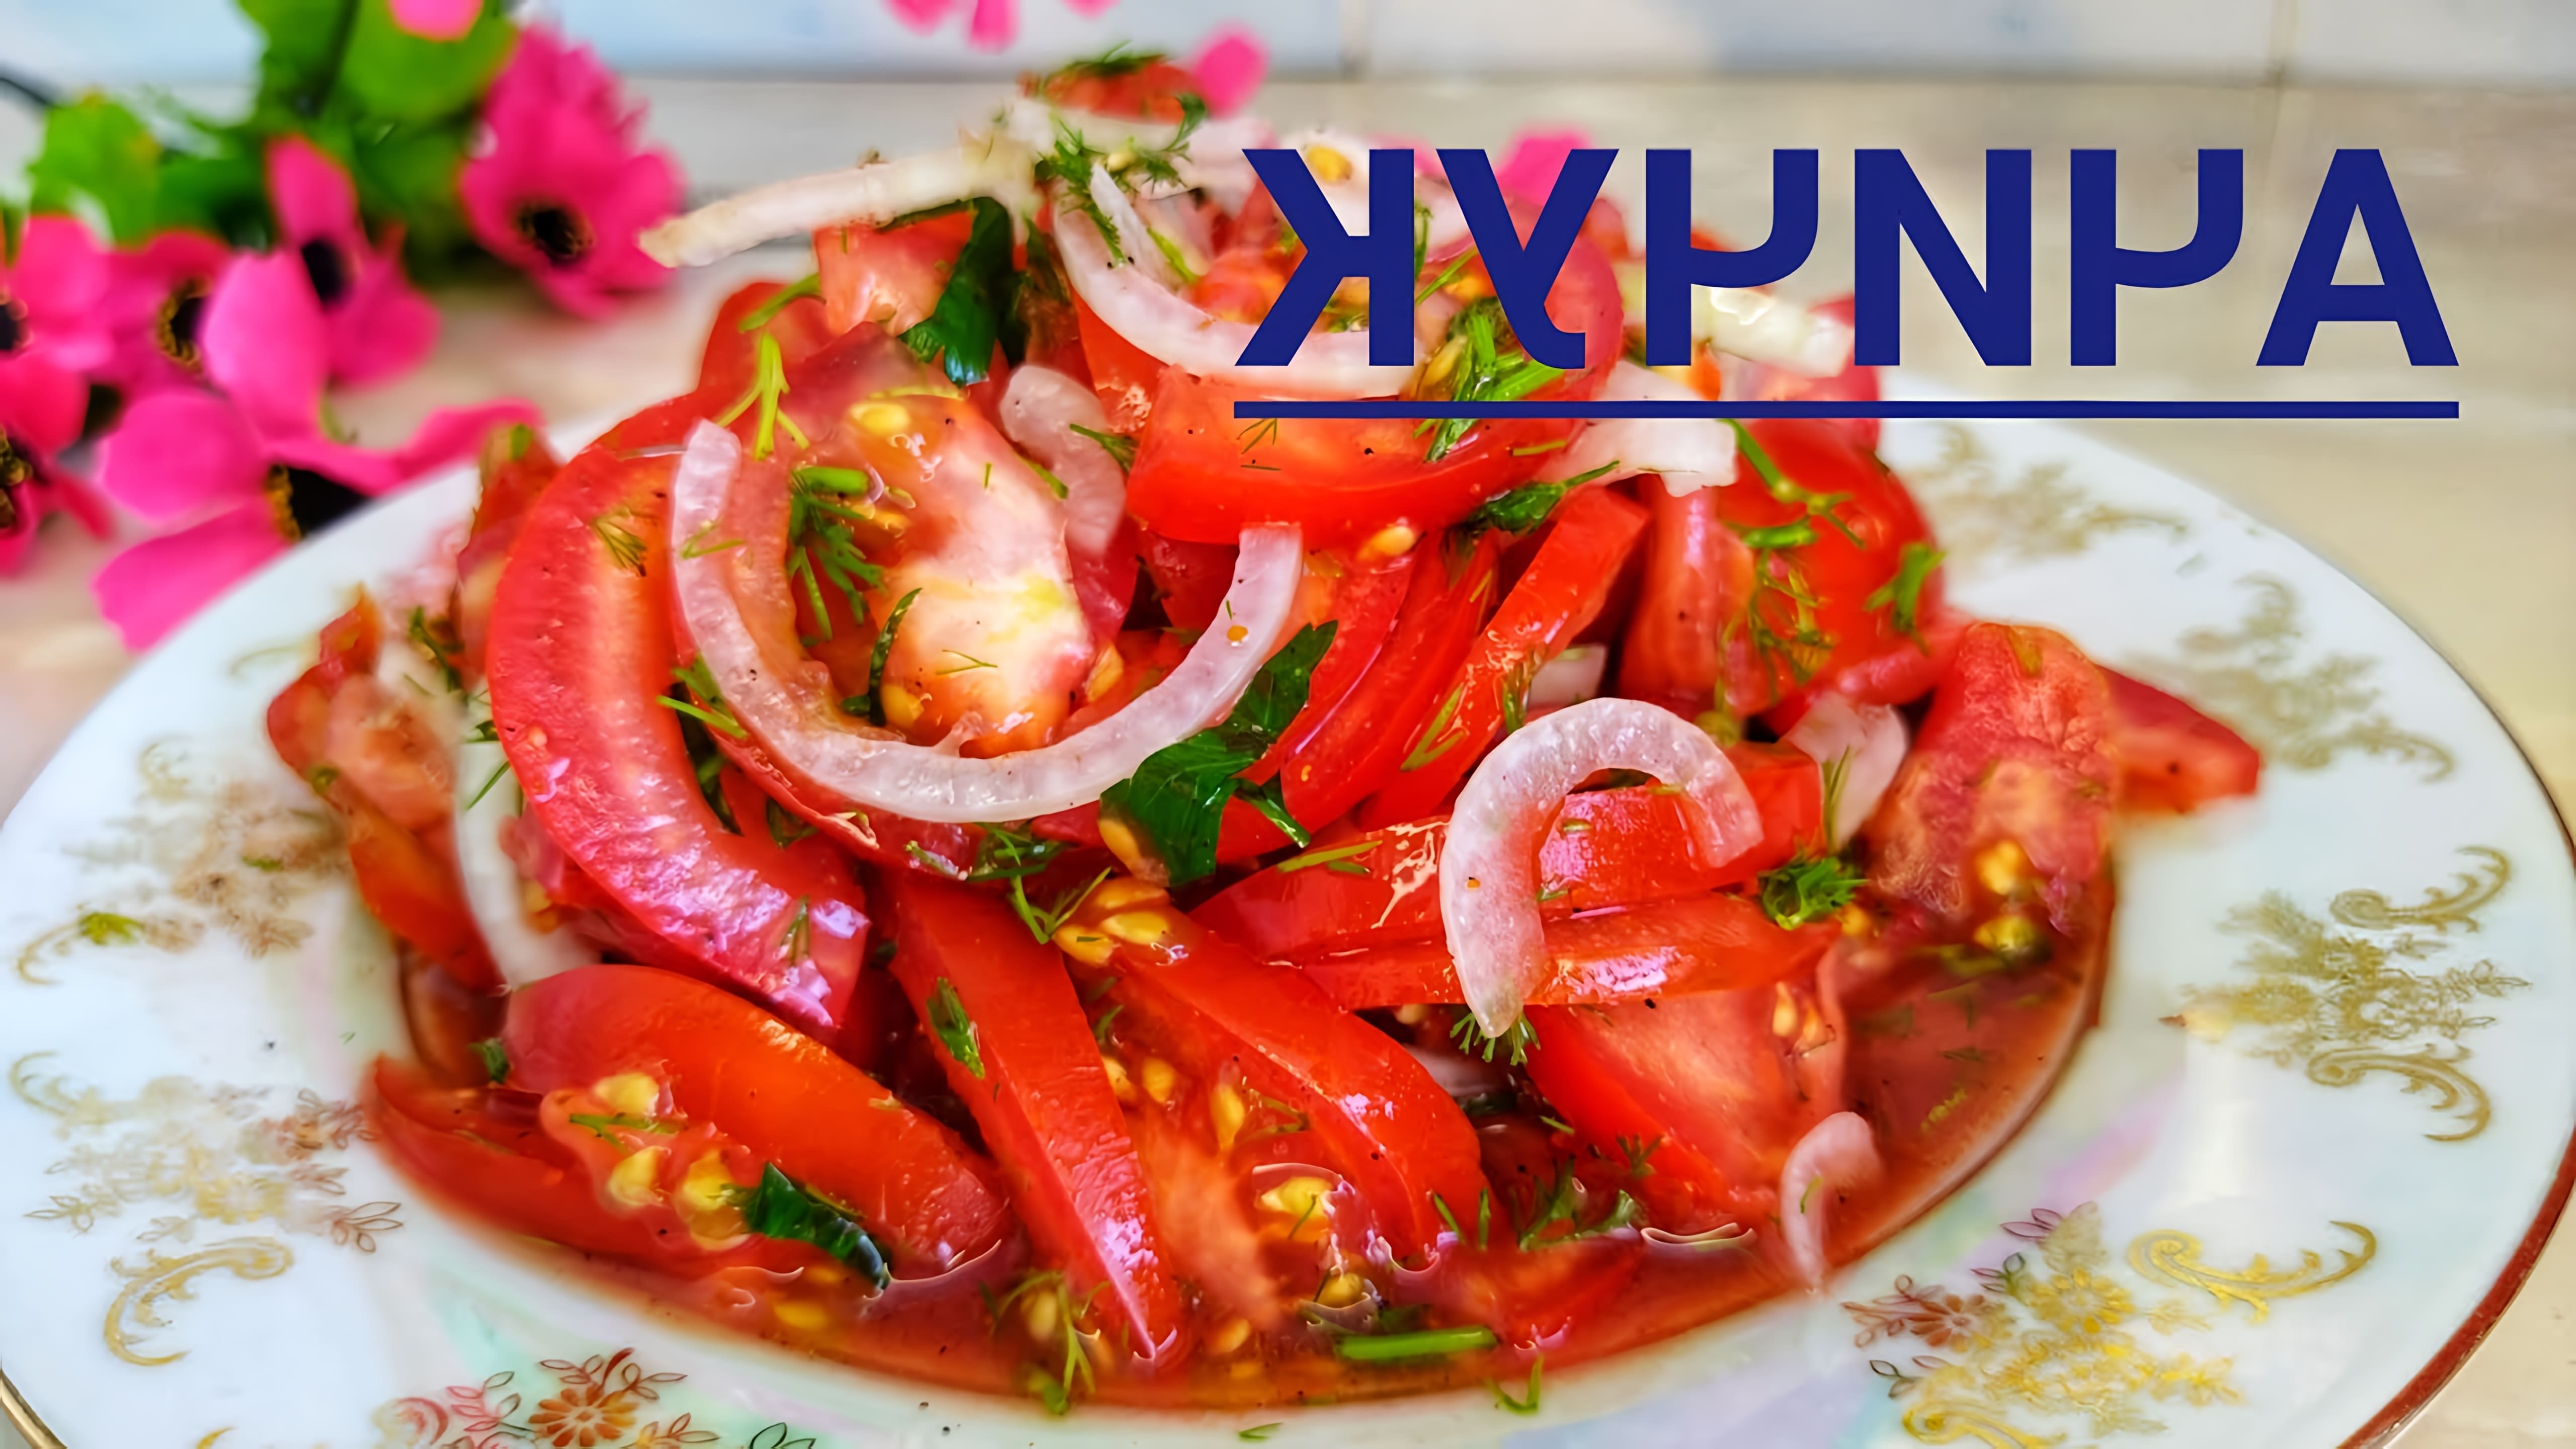 Салат за 5 минут: узбекский ачичук к плову 😋👍

В этом видео-ролике вы увидите, как приготовить вкусный и быстрый узбекский салат ачичук к плову